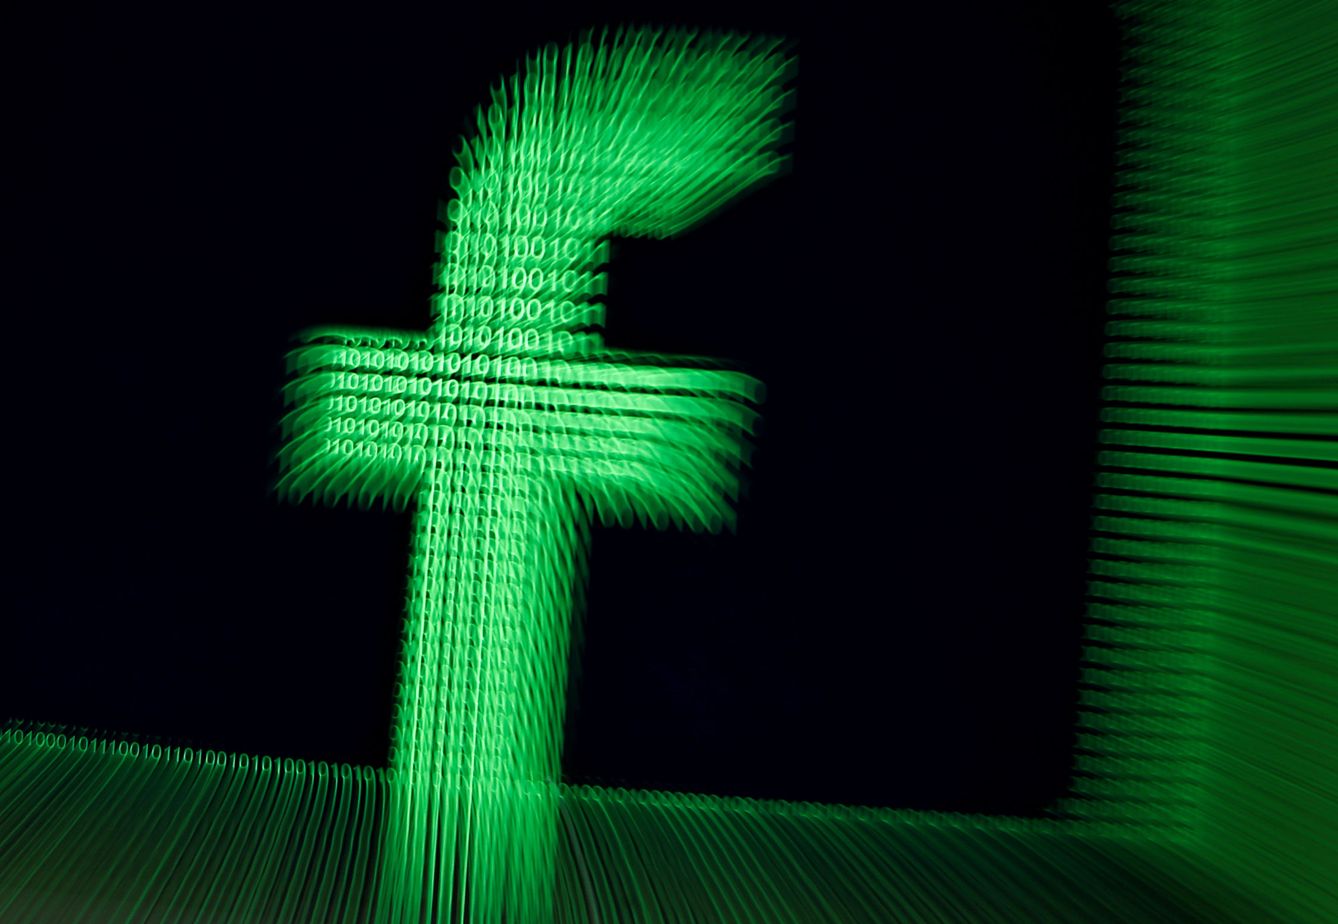 Un logo de Facebook en dígitos binarios. (Reuters)